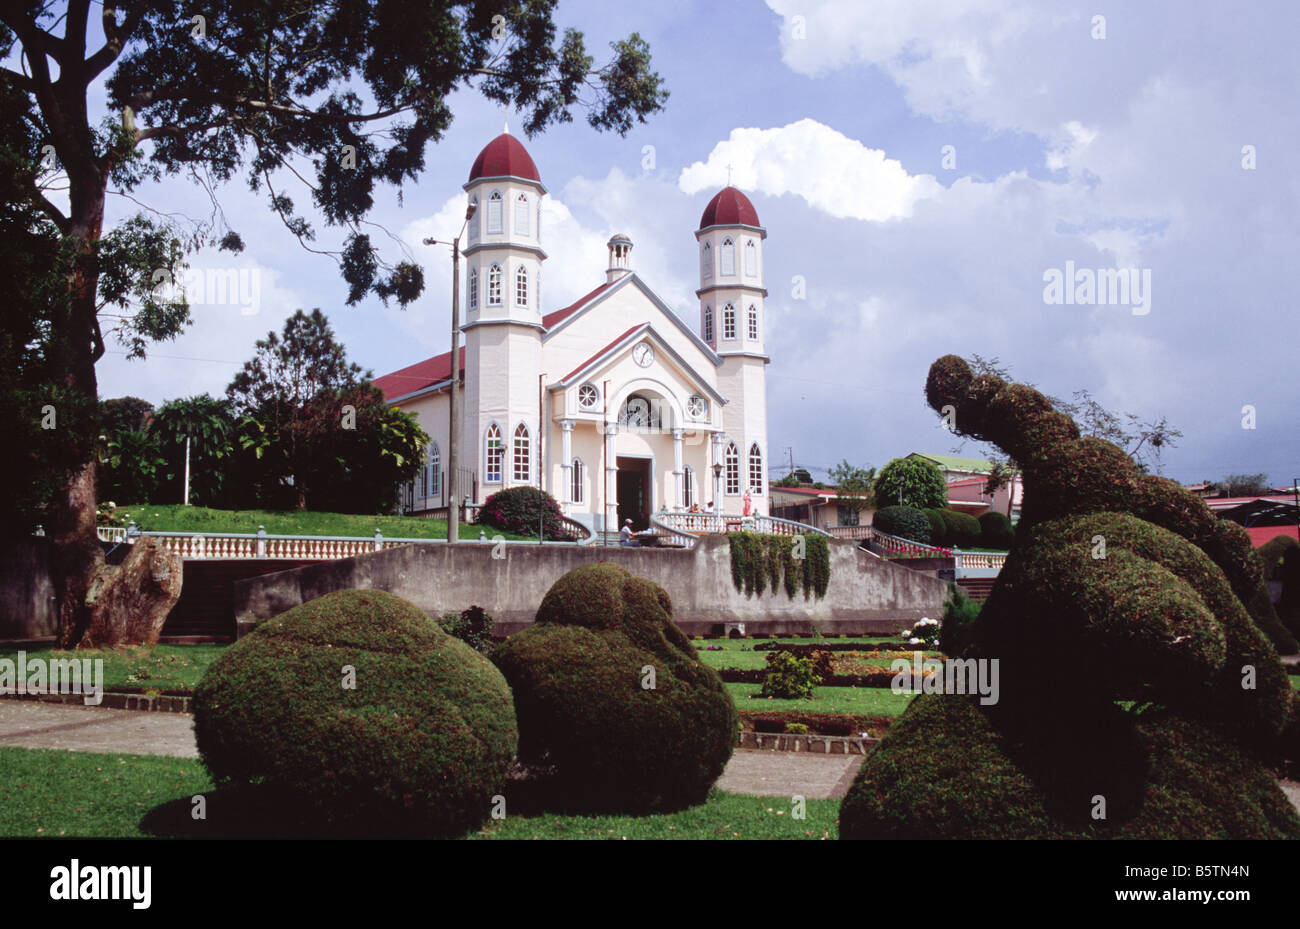 Village church and park Alvardo Zarcero Costa Rica Central America Stock Photo